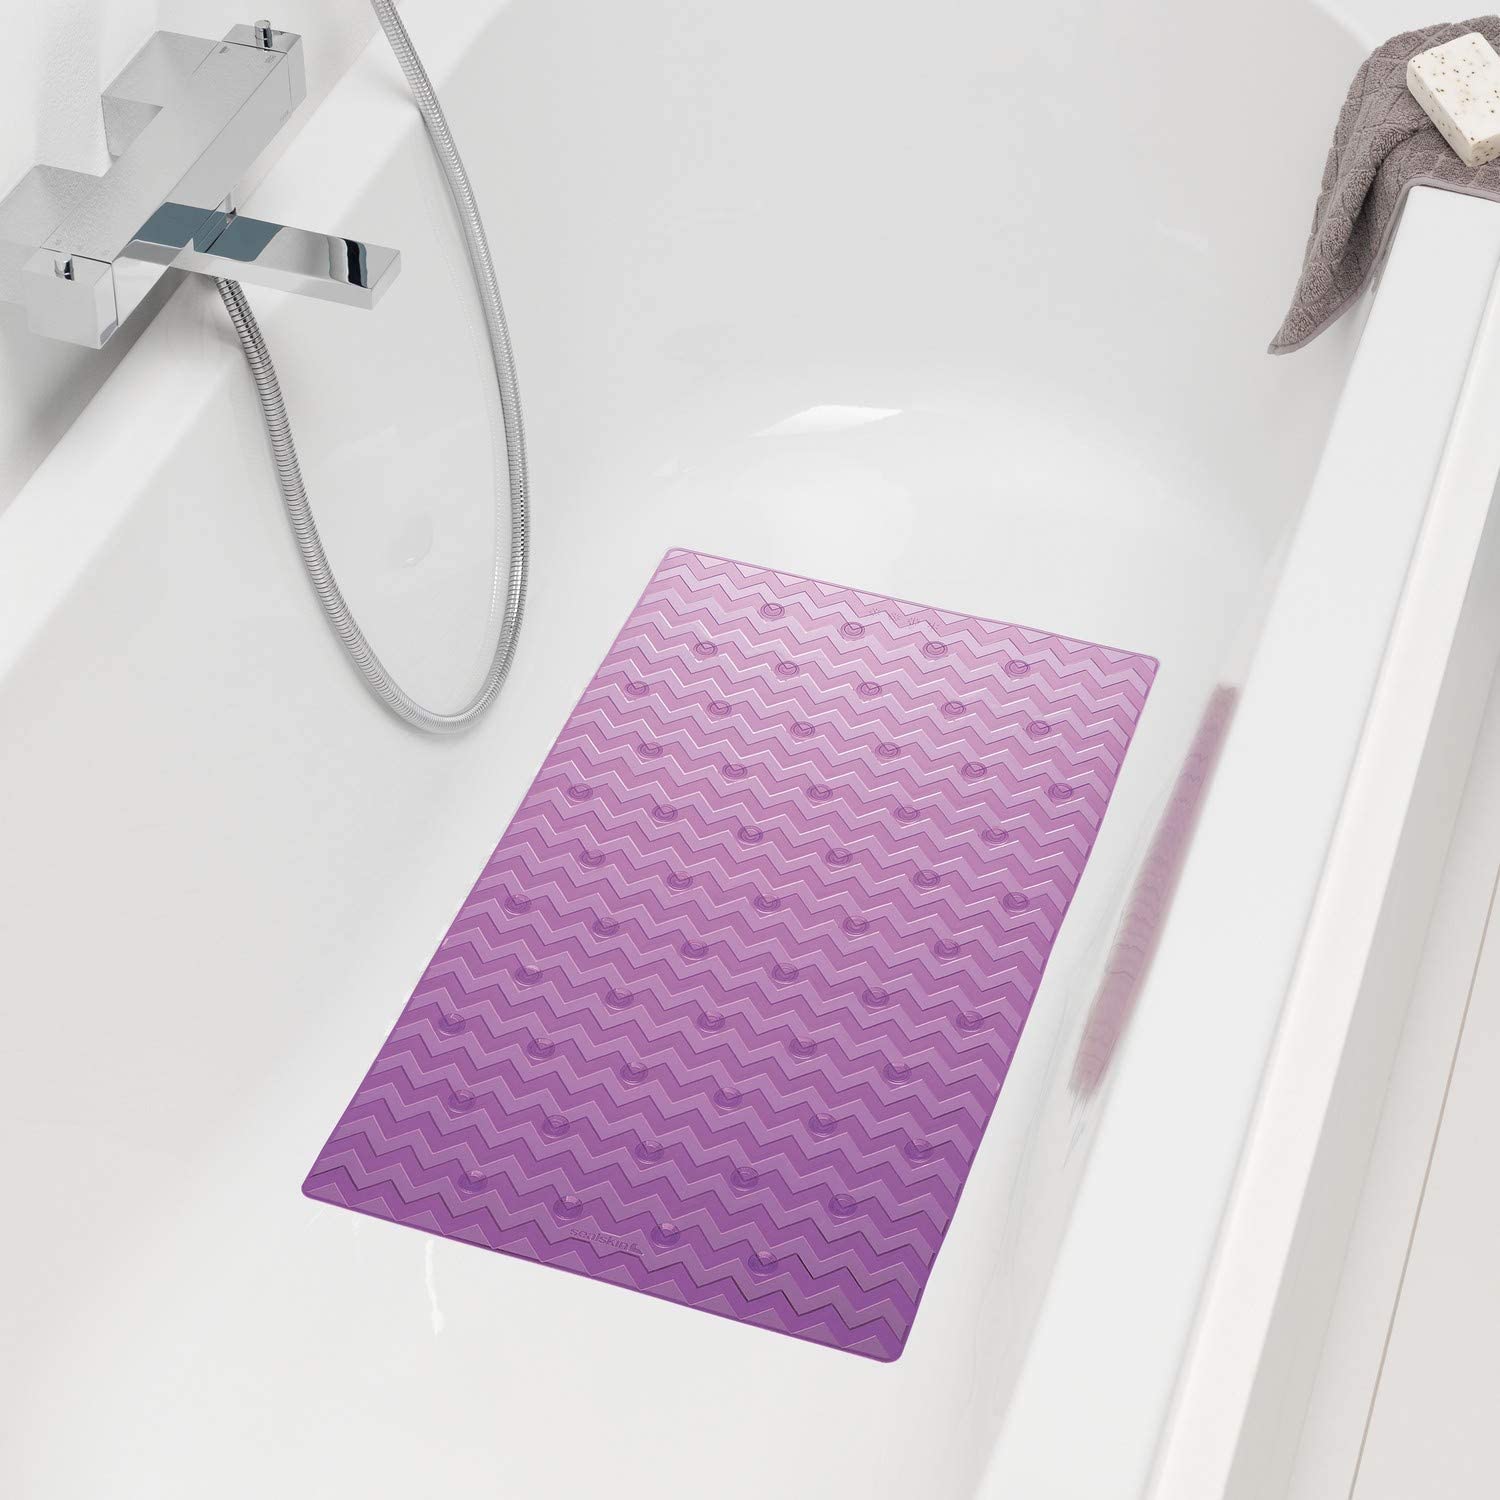 Badewanneneinlage, Sicherheitseinlage für Dusche und Badewanne, Farbe: Rosa, Größe: 70x40 cm